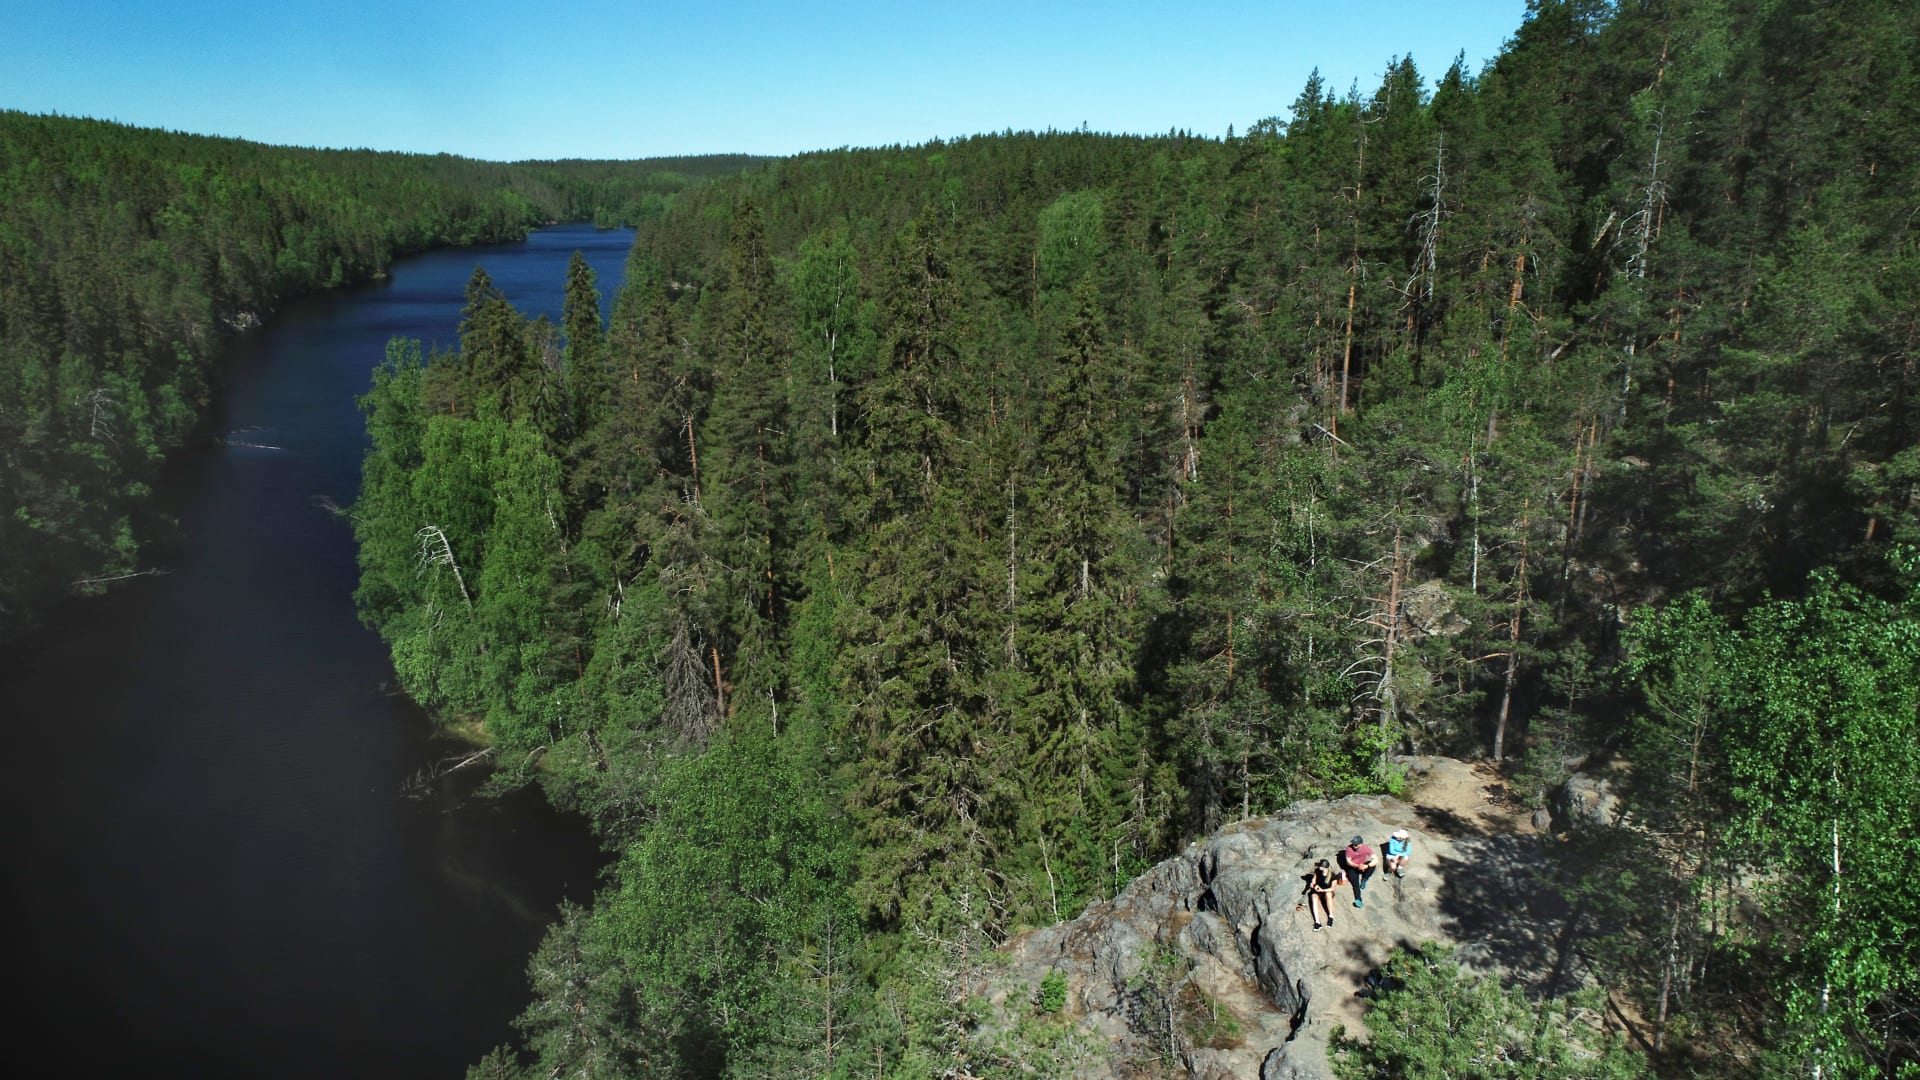 Ilmakuva kapeasta järvestä, jonka oikealla puolella kohoaa korkea kallio, muutoin järvi on metsien ympäröimä. Kalliolla istuu kolme retkeilijää.